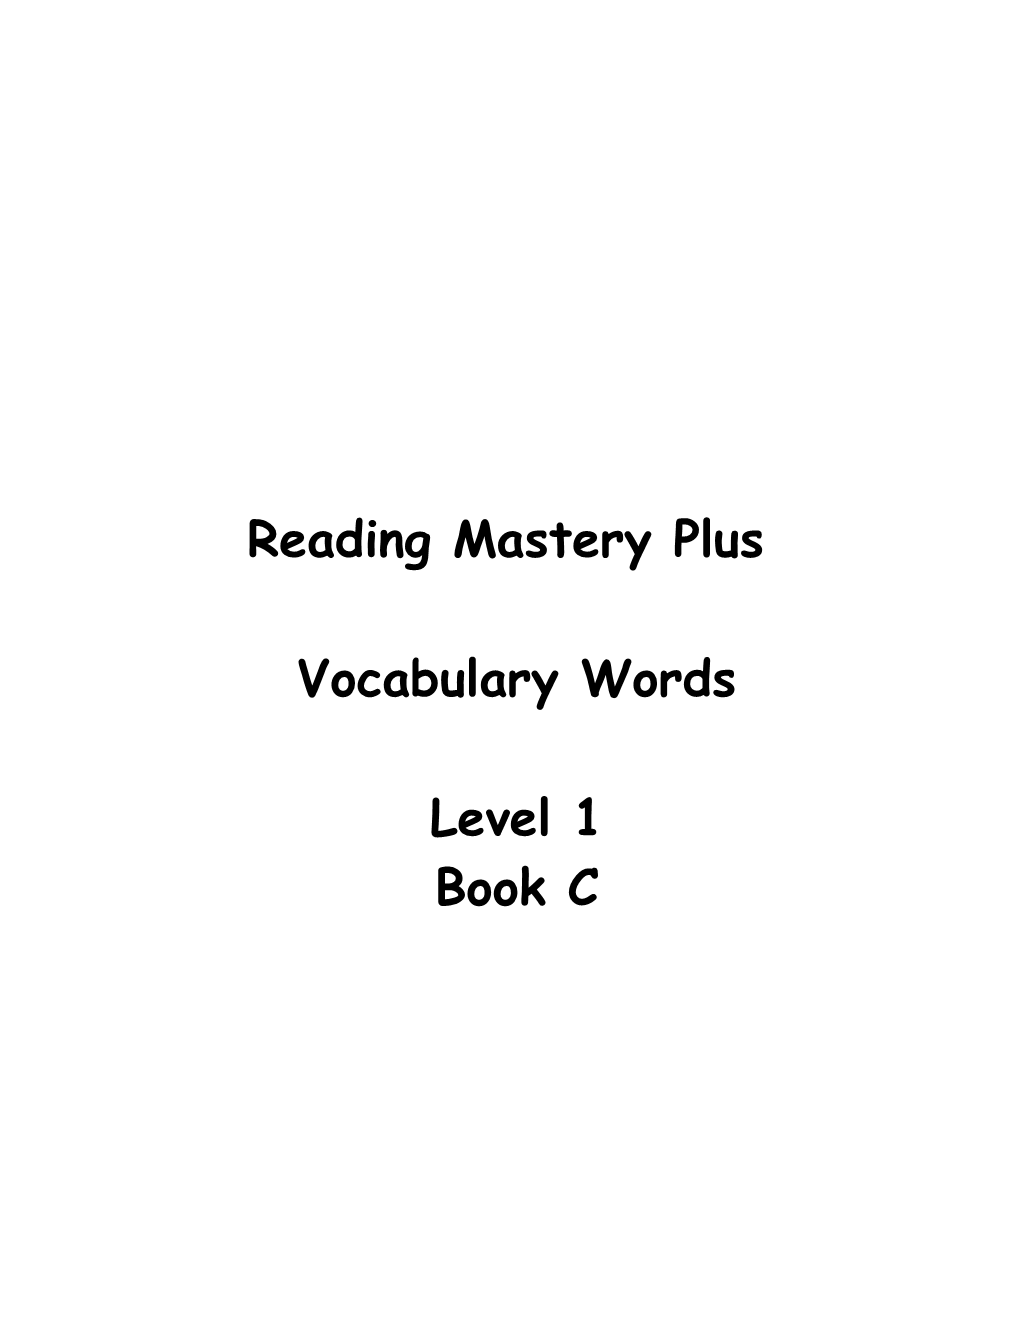 Reading Mastery Plus Level 1